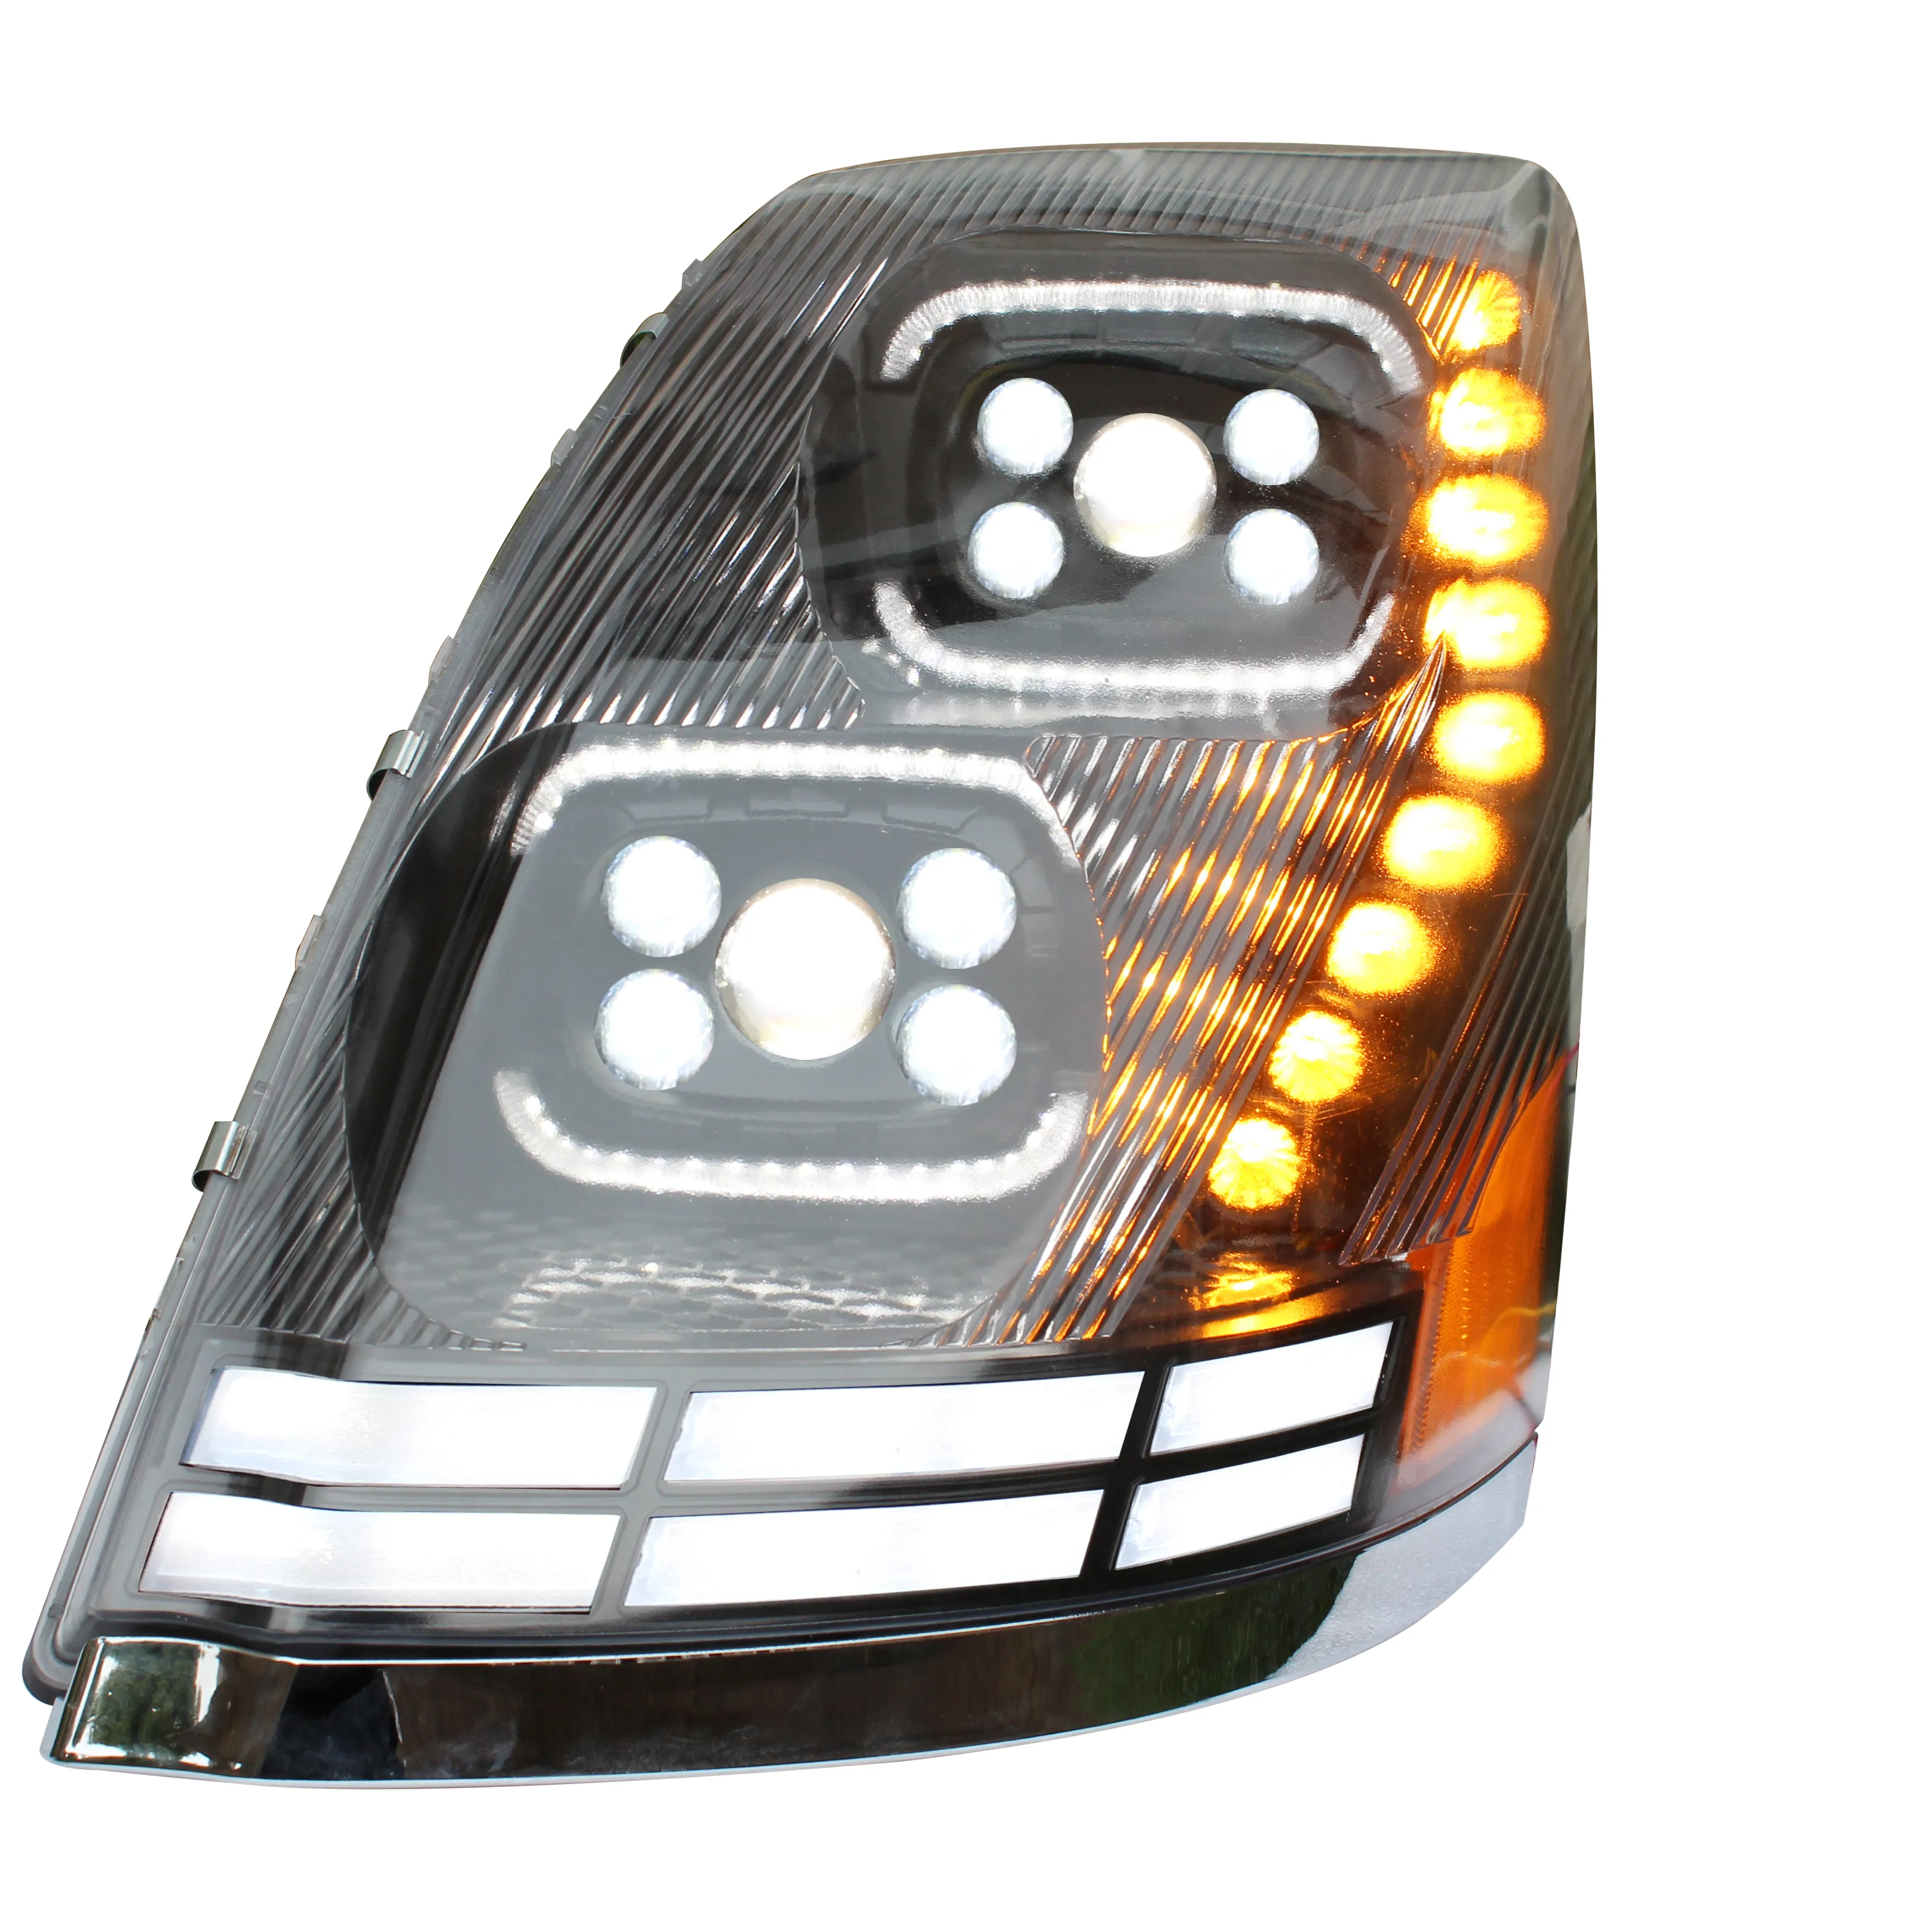 America VNL/VOLVO Auto LED Scheinwerfer Front leuchte für schwere Nutzfahrzeuge 04-17